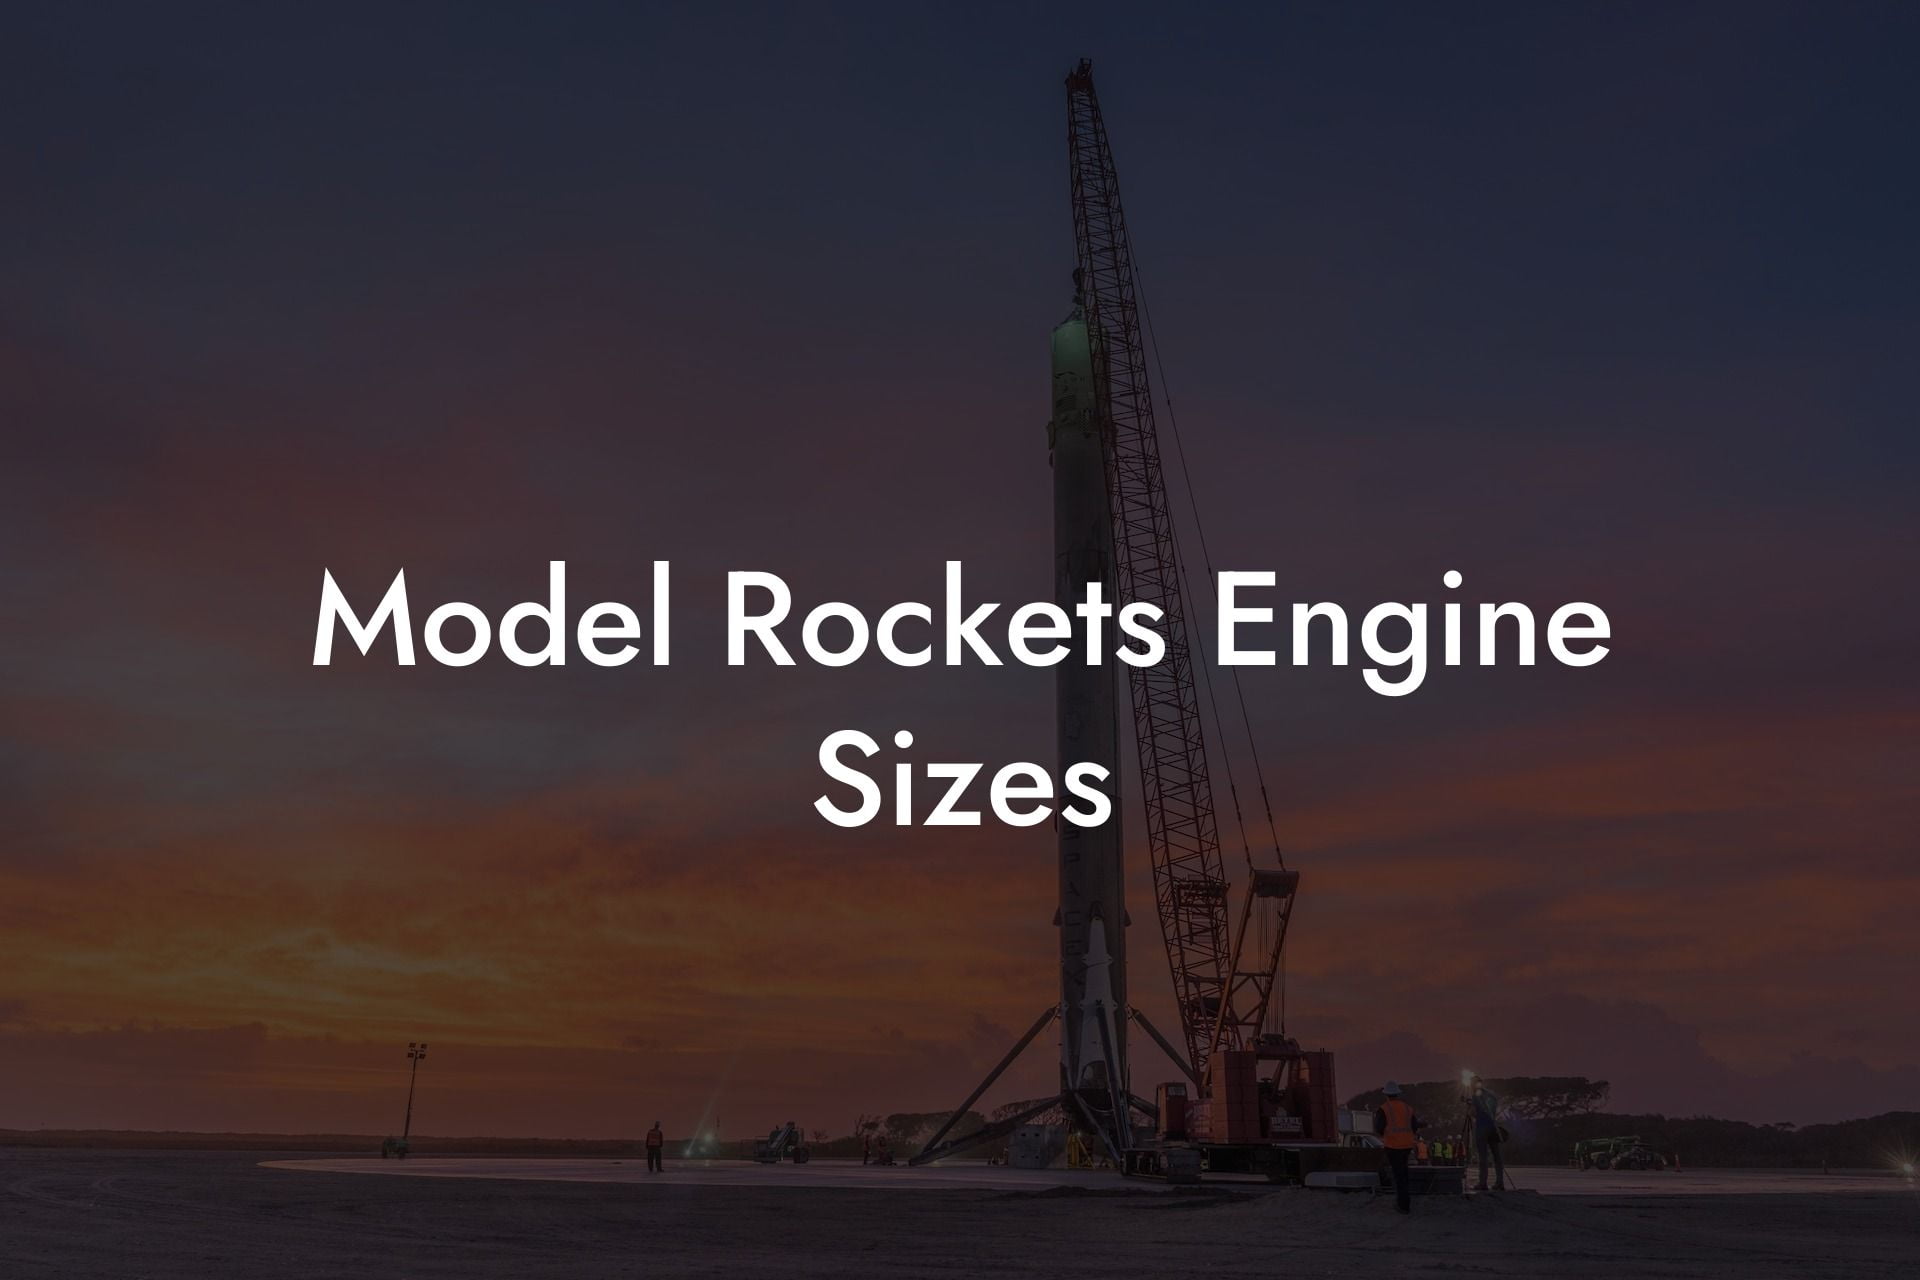 Model Rockets Engine Sizes